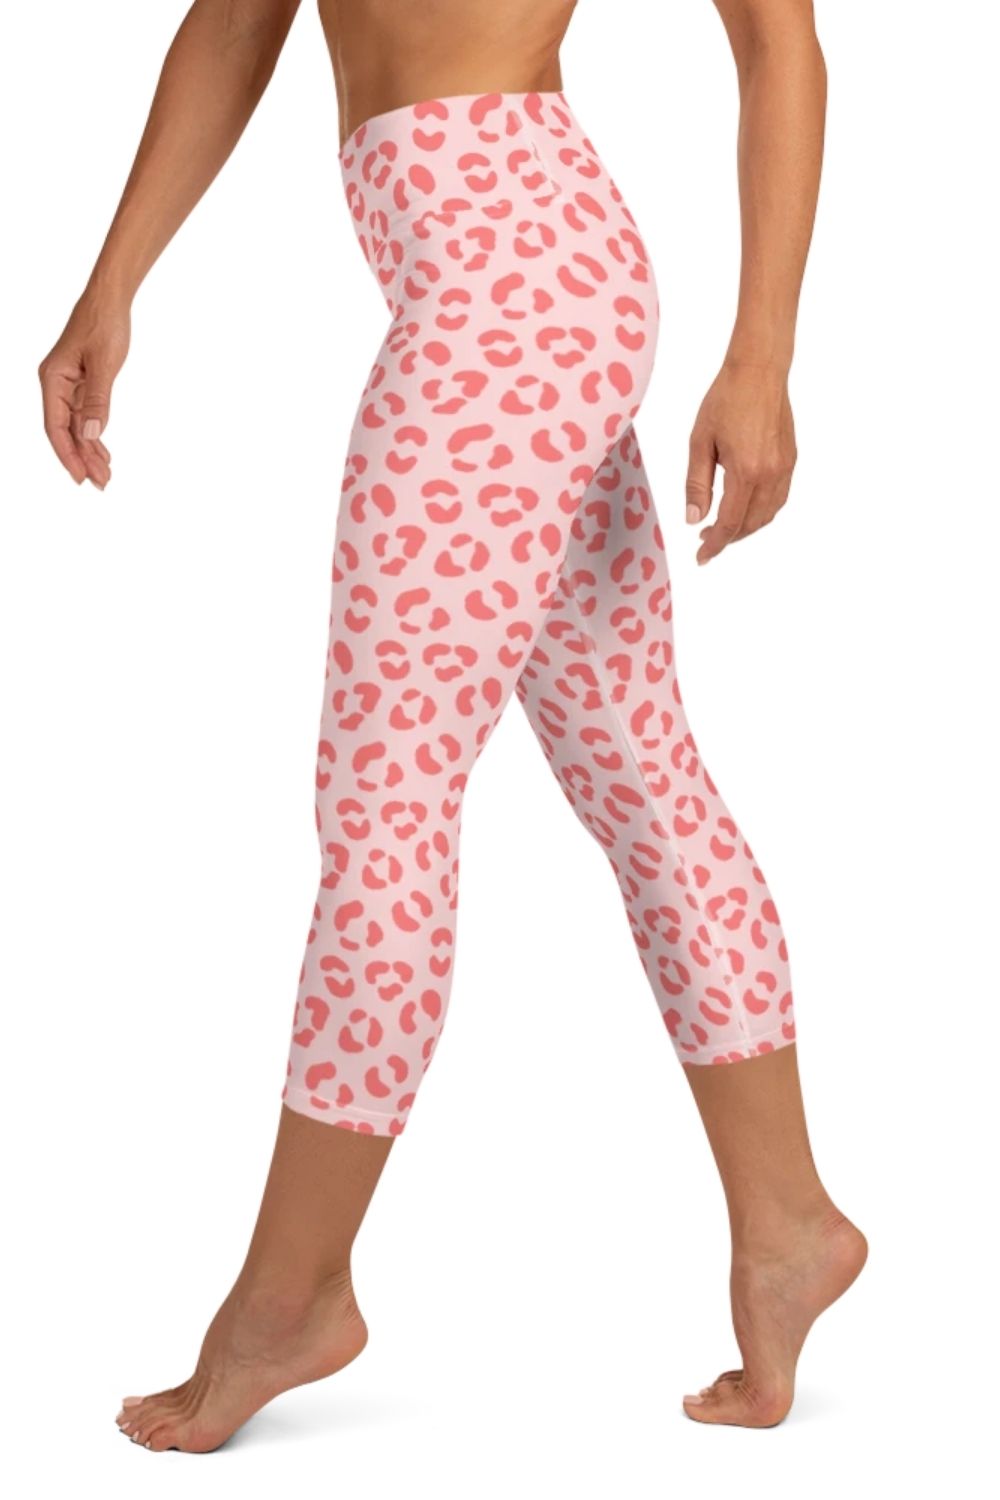 Pink Cheetah Print 3/4 Leggings - Moss & Malibu